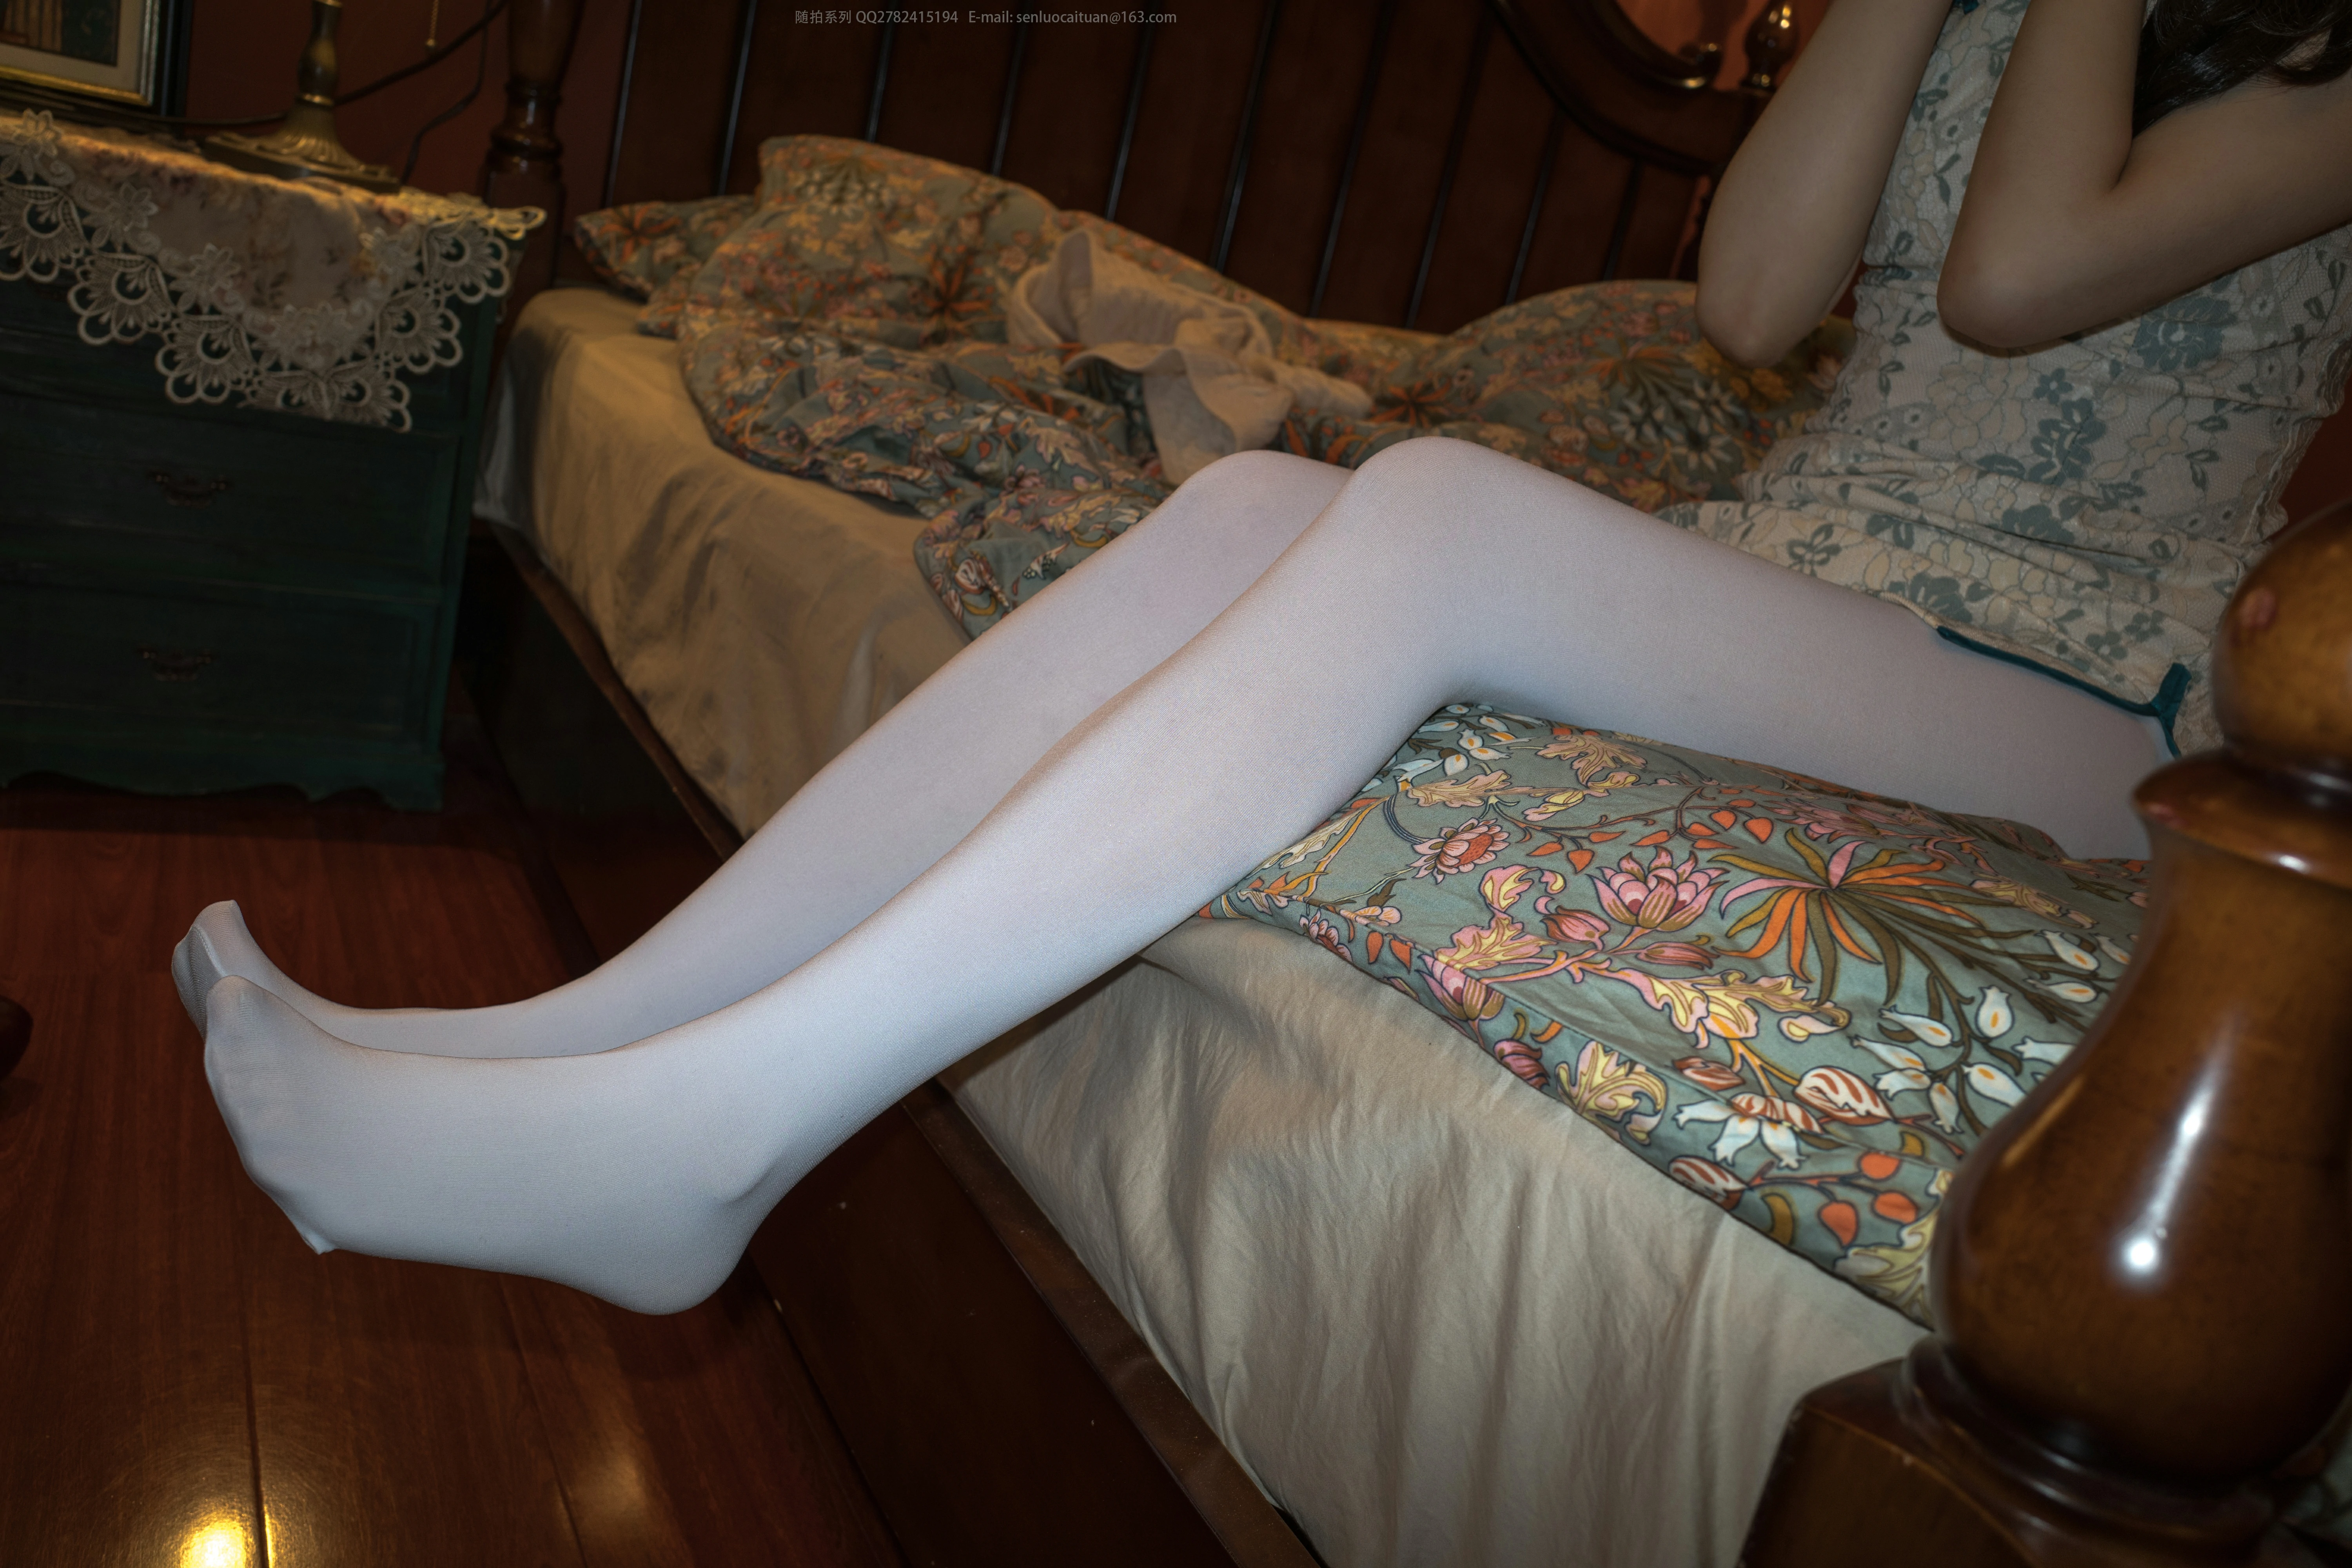 [森萝财团]随拍01 别墅萝莉小学生 白色旗袍与内衣加白色丝袜美腿性感私房写真集,